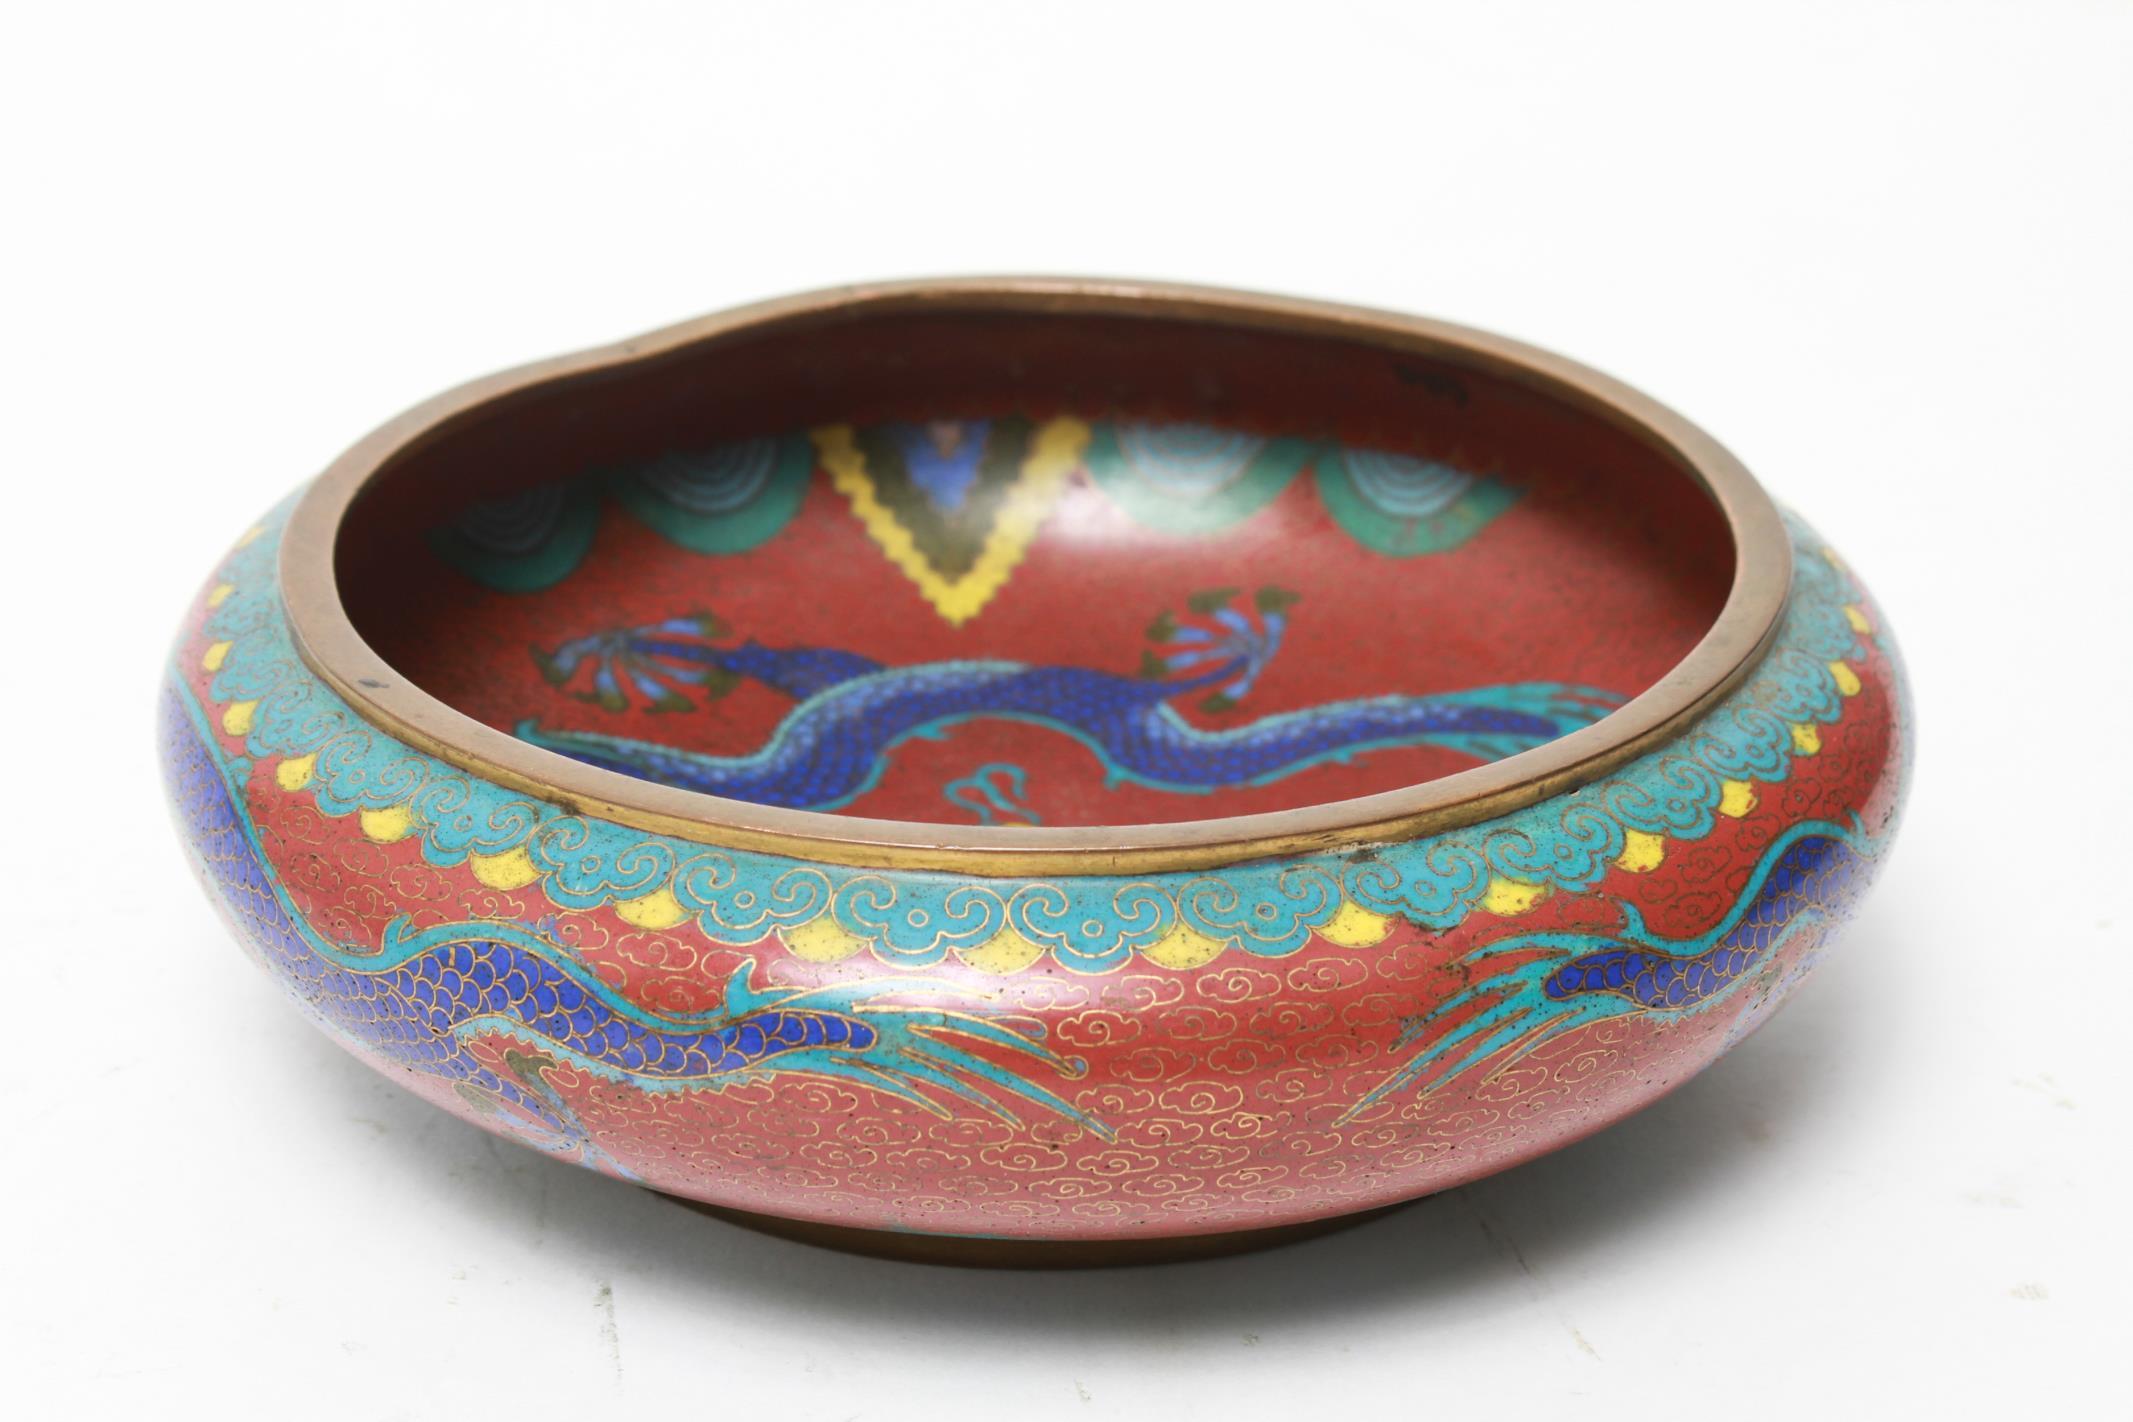 cloisonne dragon bowl